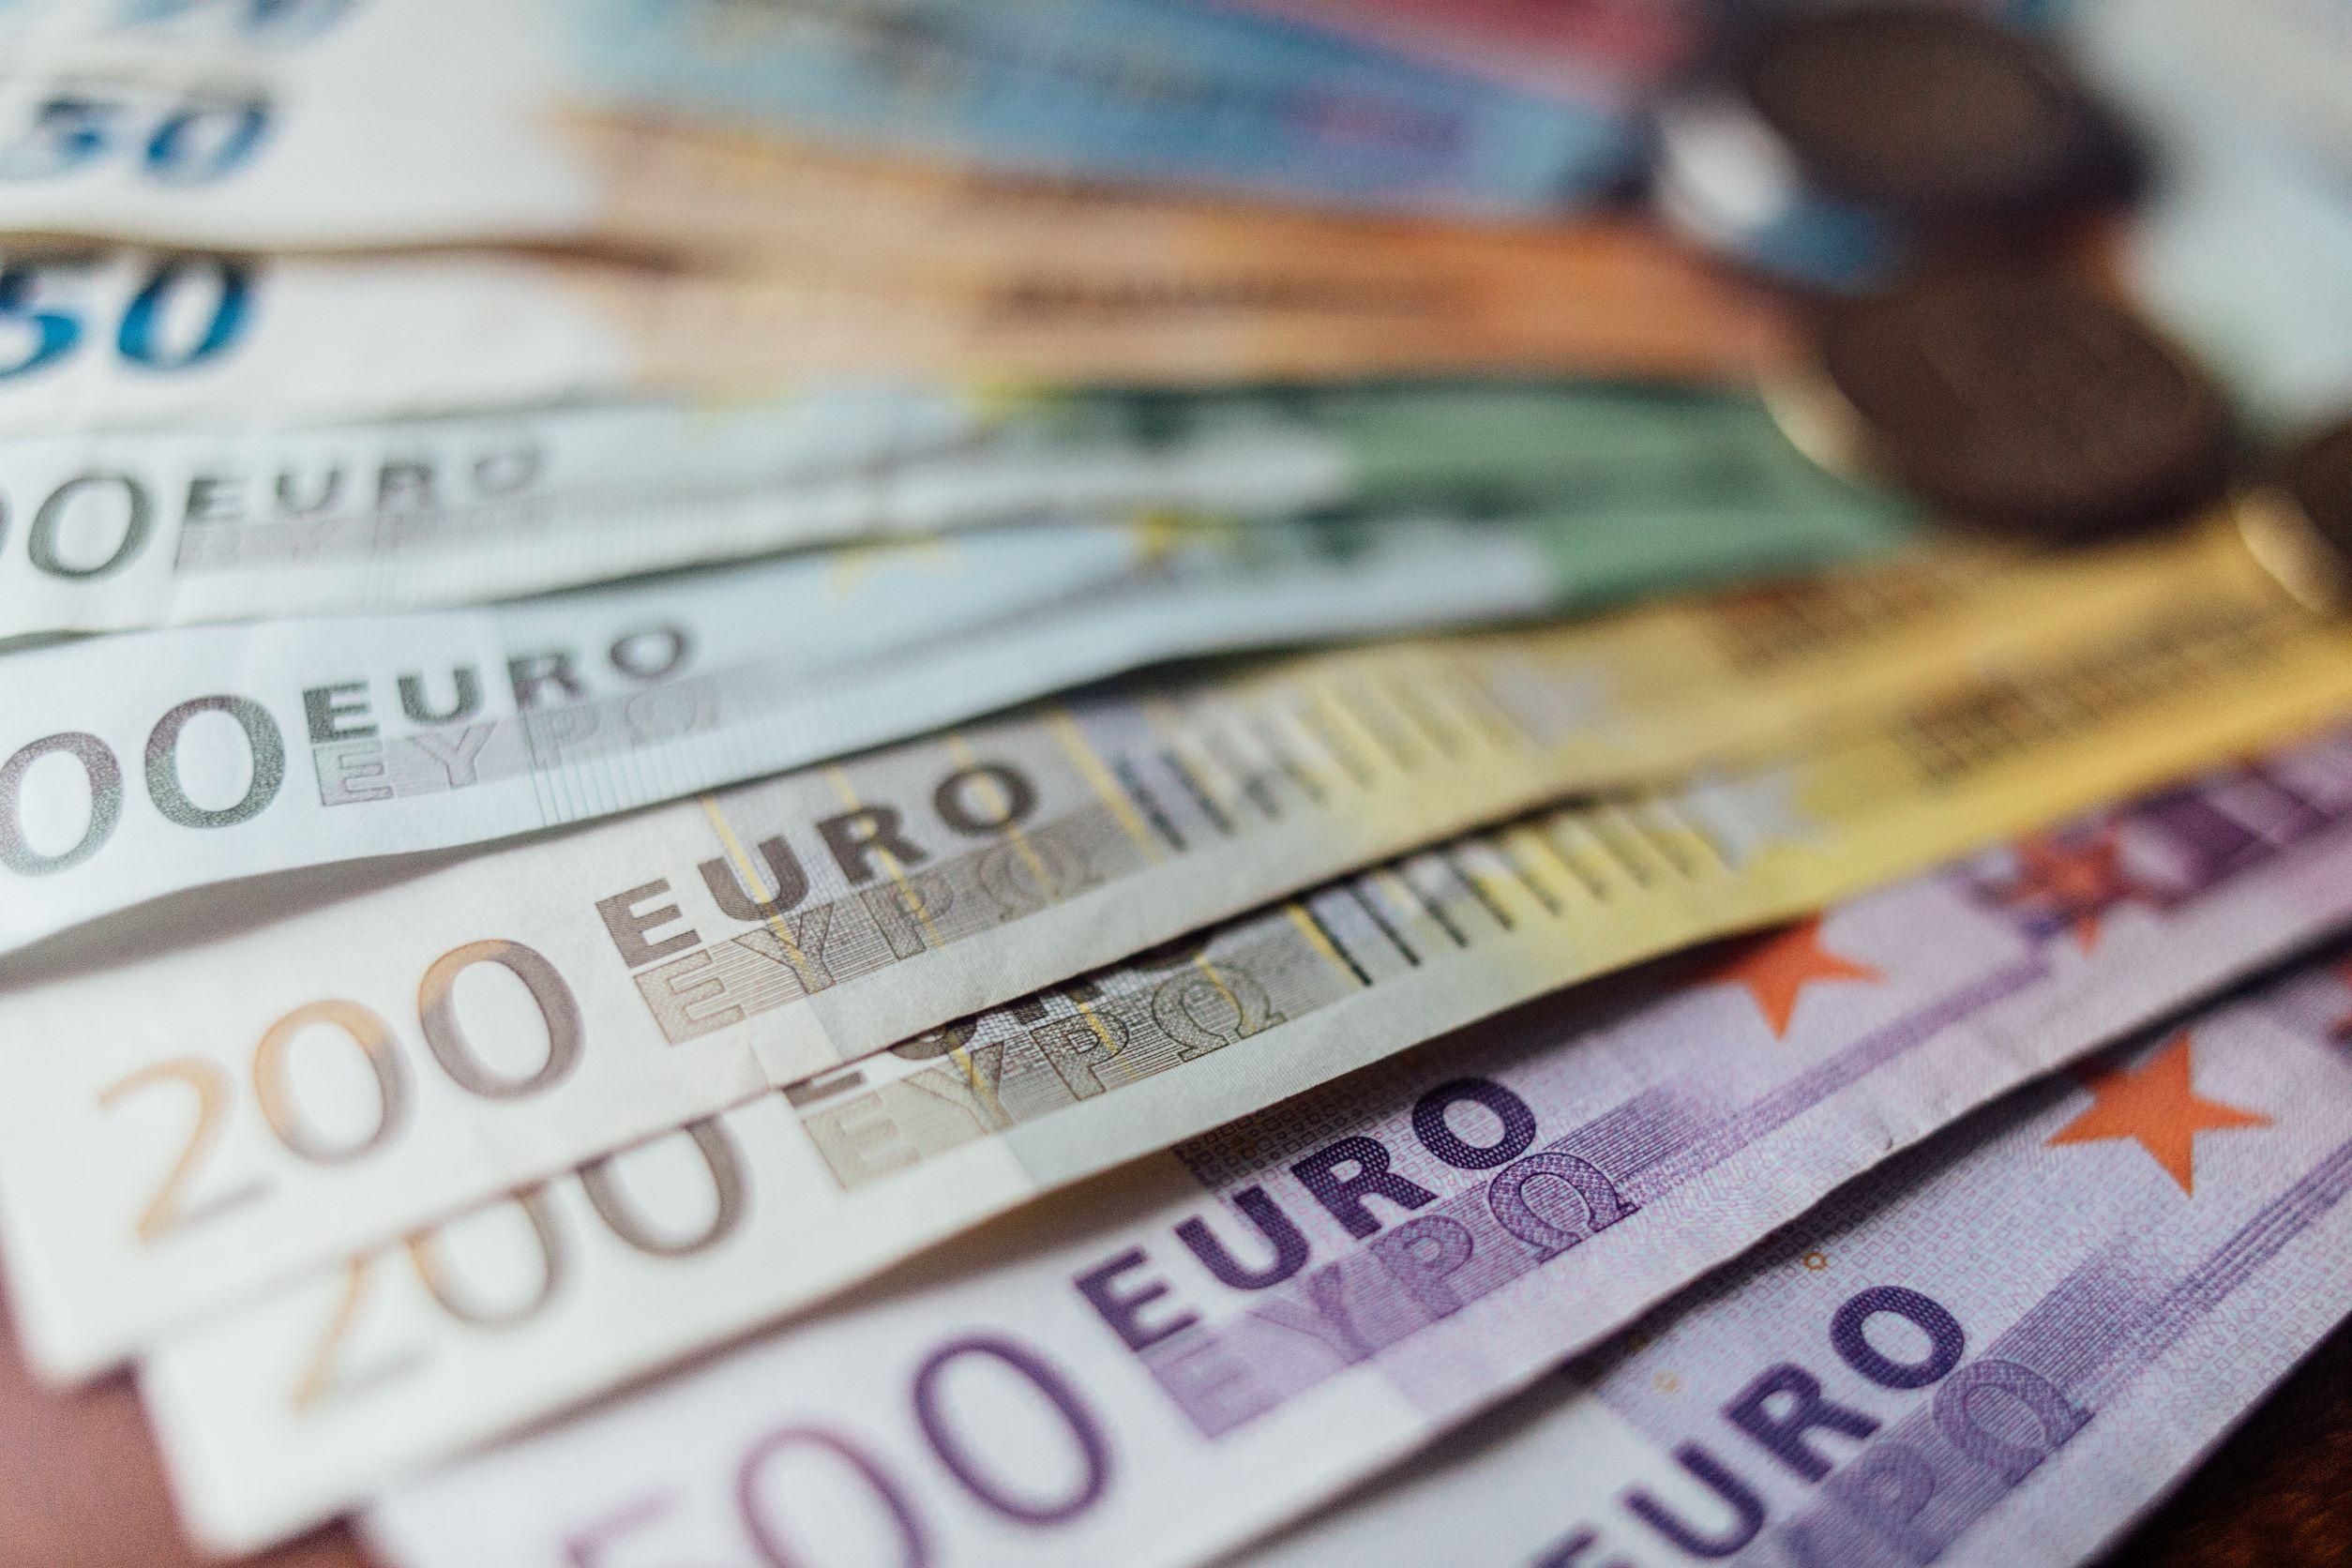 A horvát kormány lecsap az euró bevezetésén nyerészkedőkre